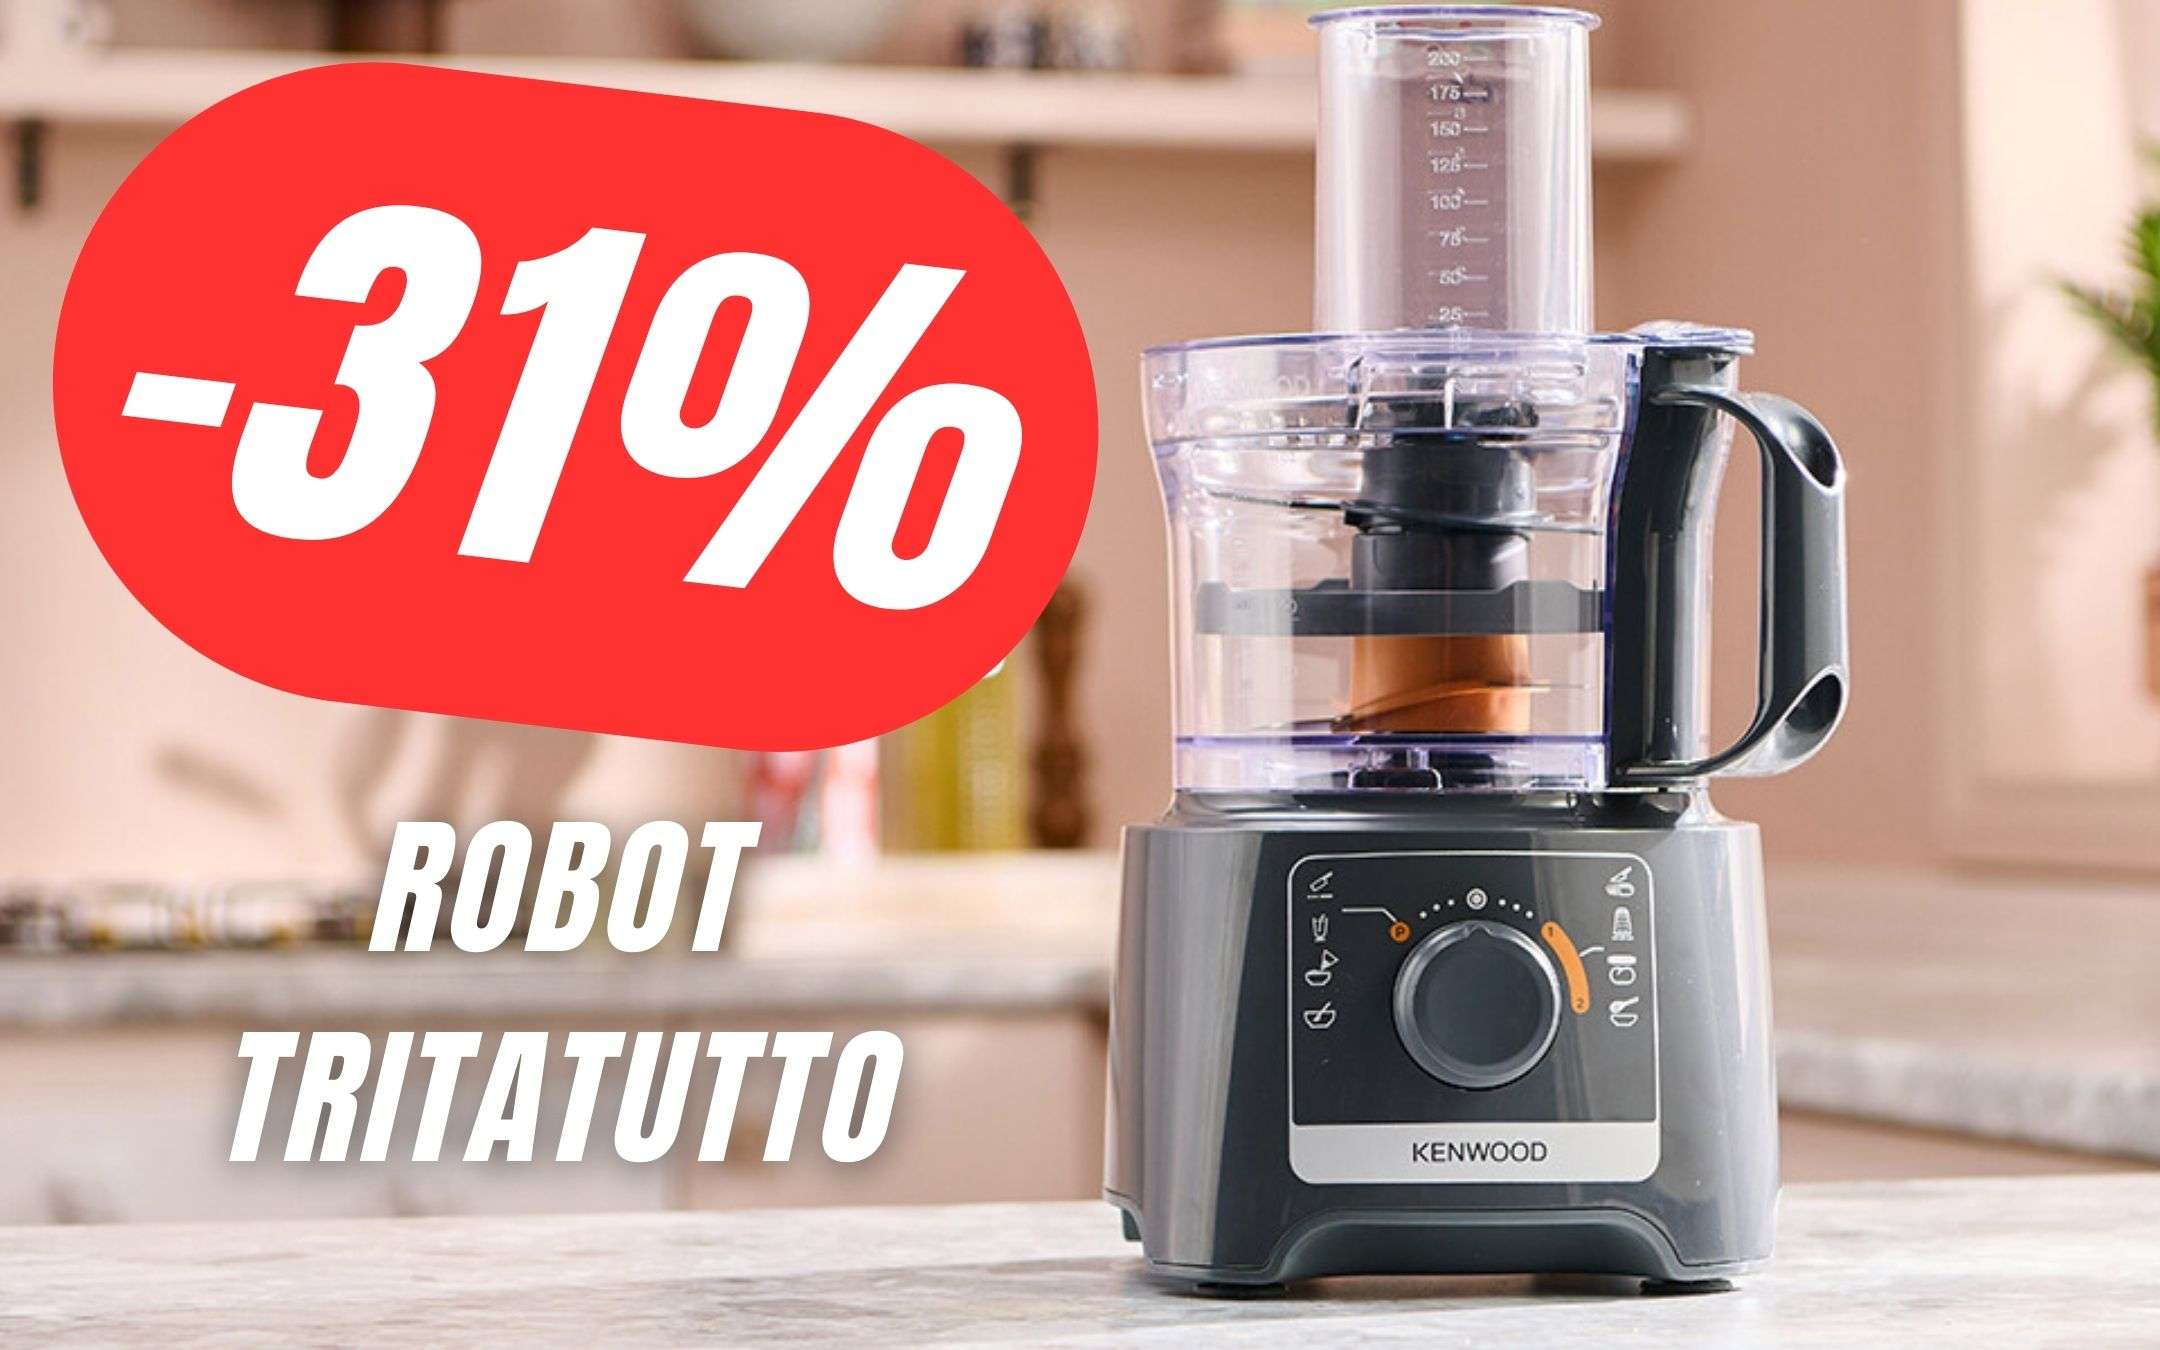 Risparmia 30€ sul Robot Tritatutto di Kenwood!